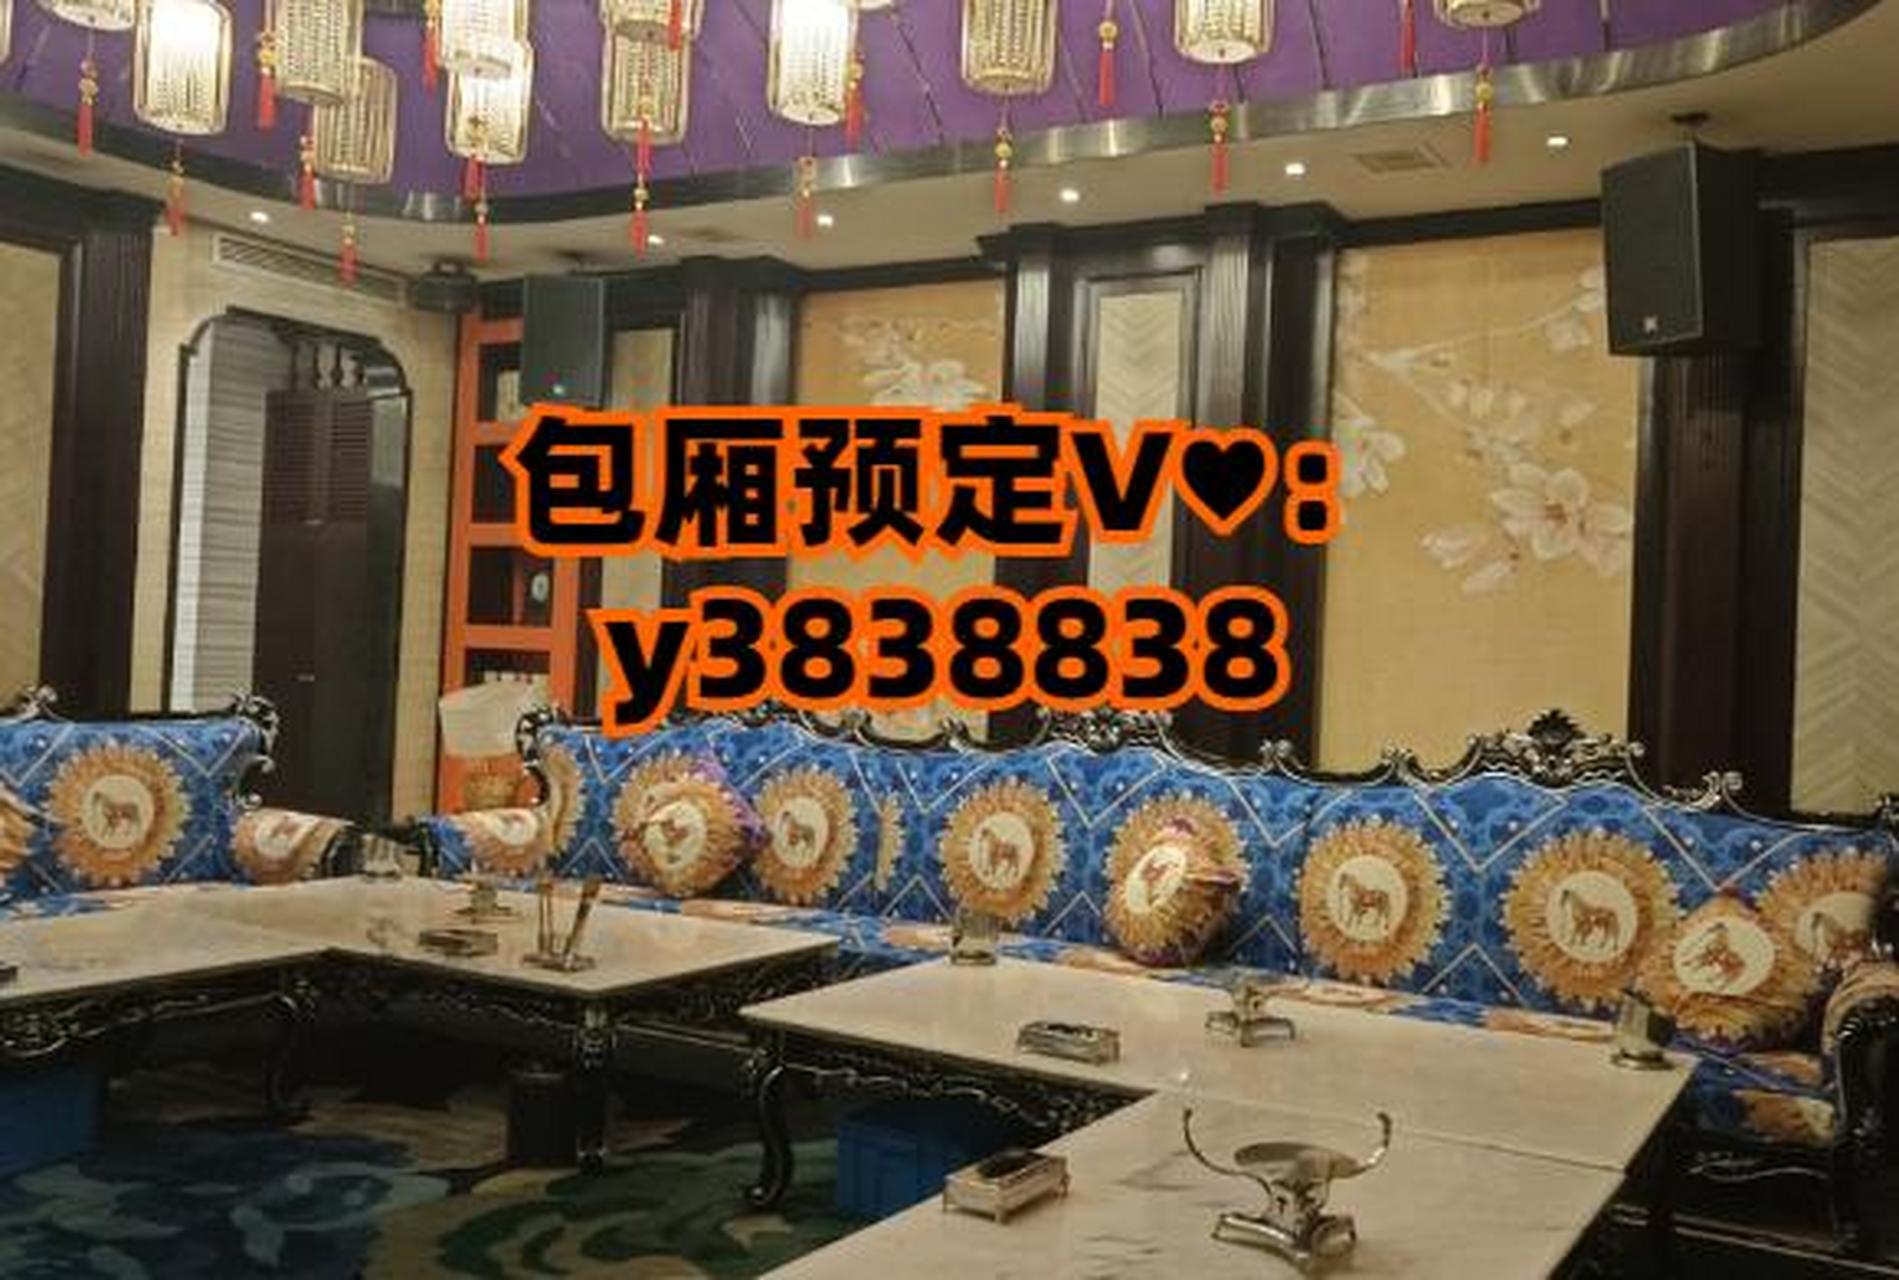 上海国色天香ktv【第一上海中心的KTV】